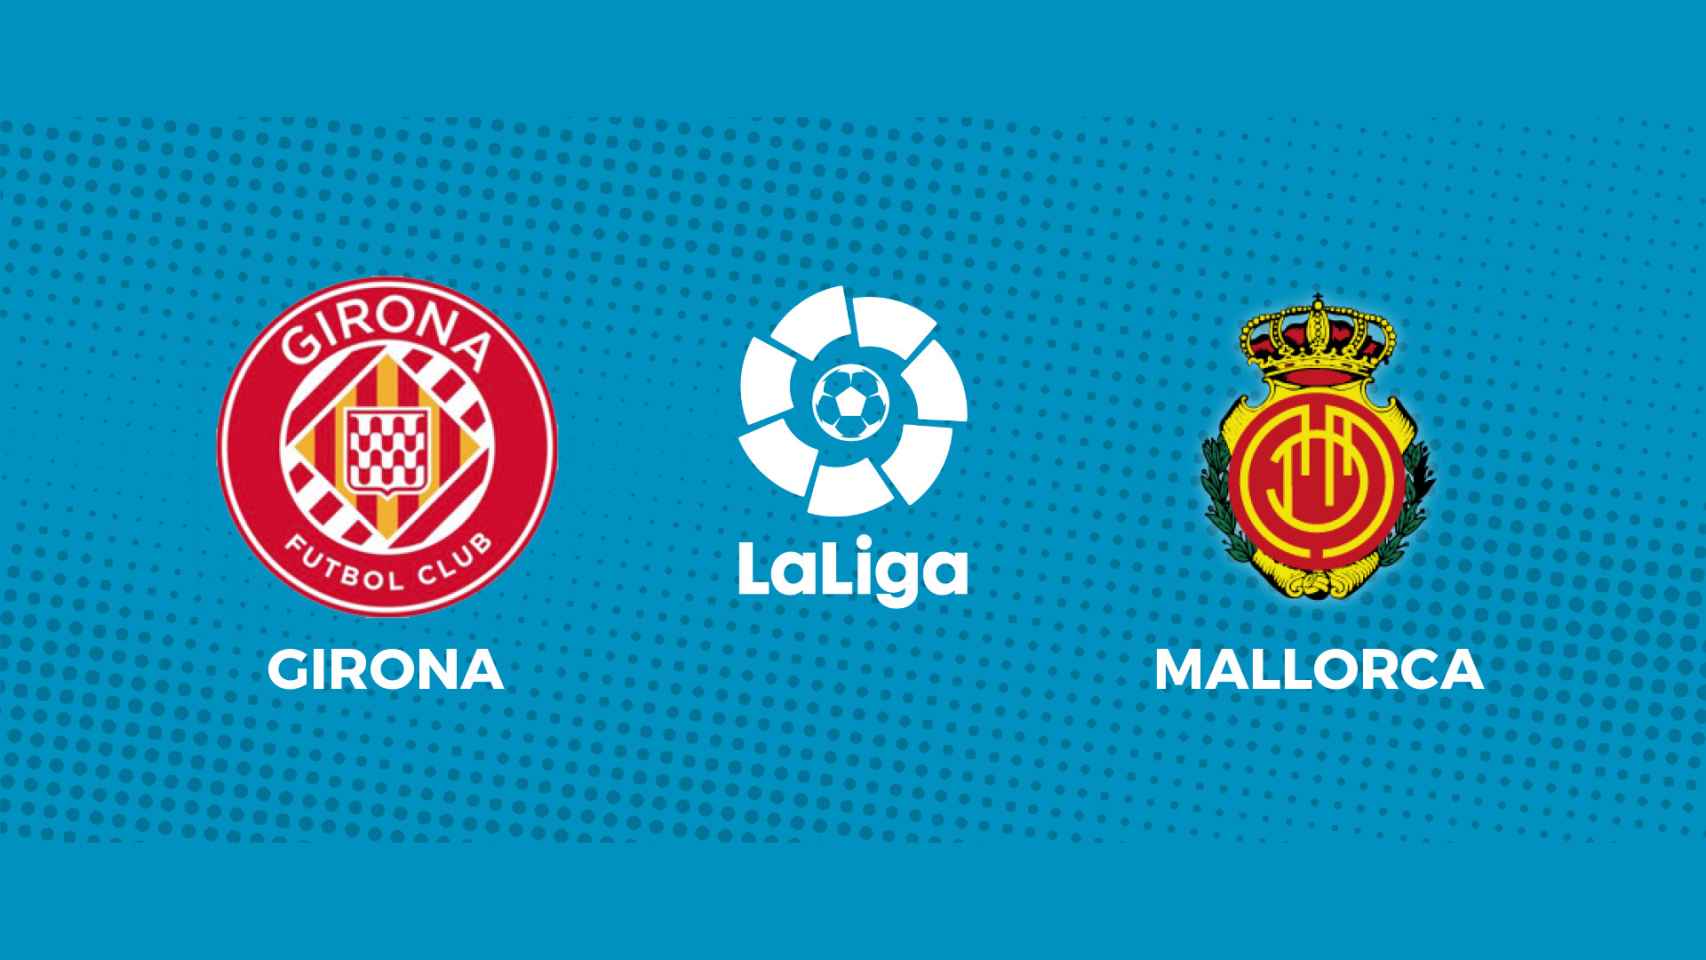 Girona - Mallorca, La Liga en directo